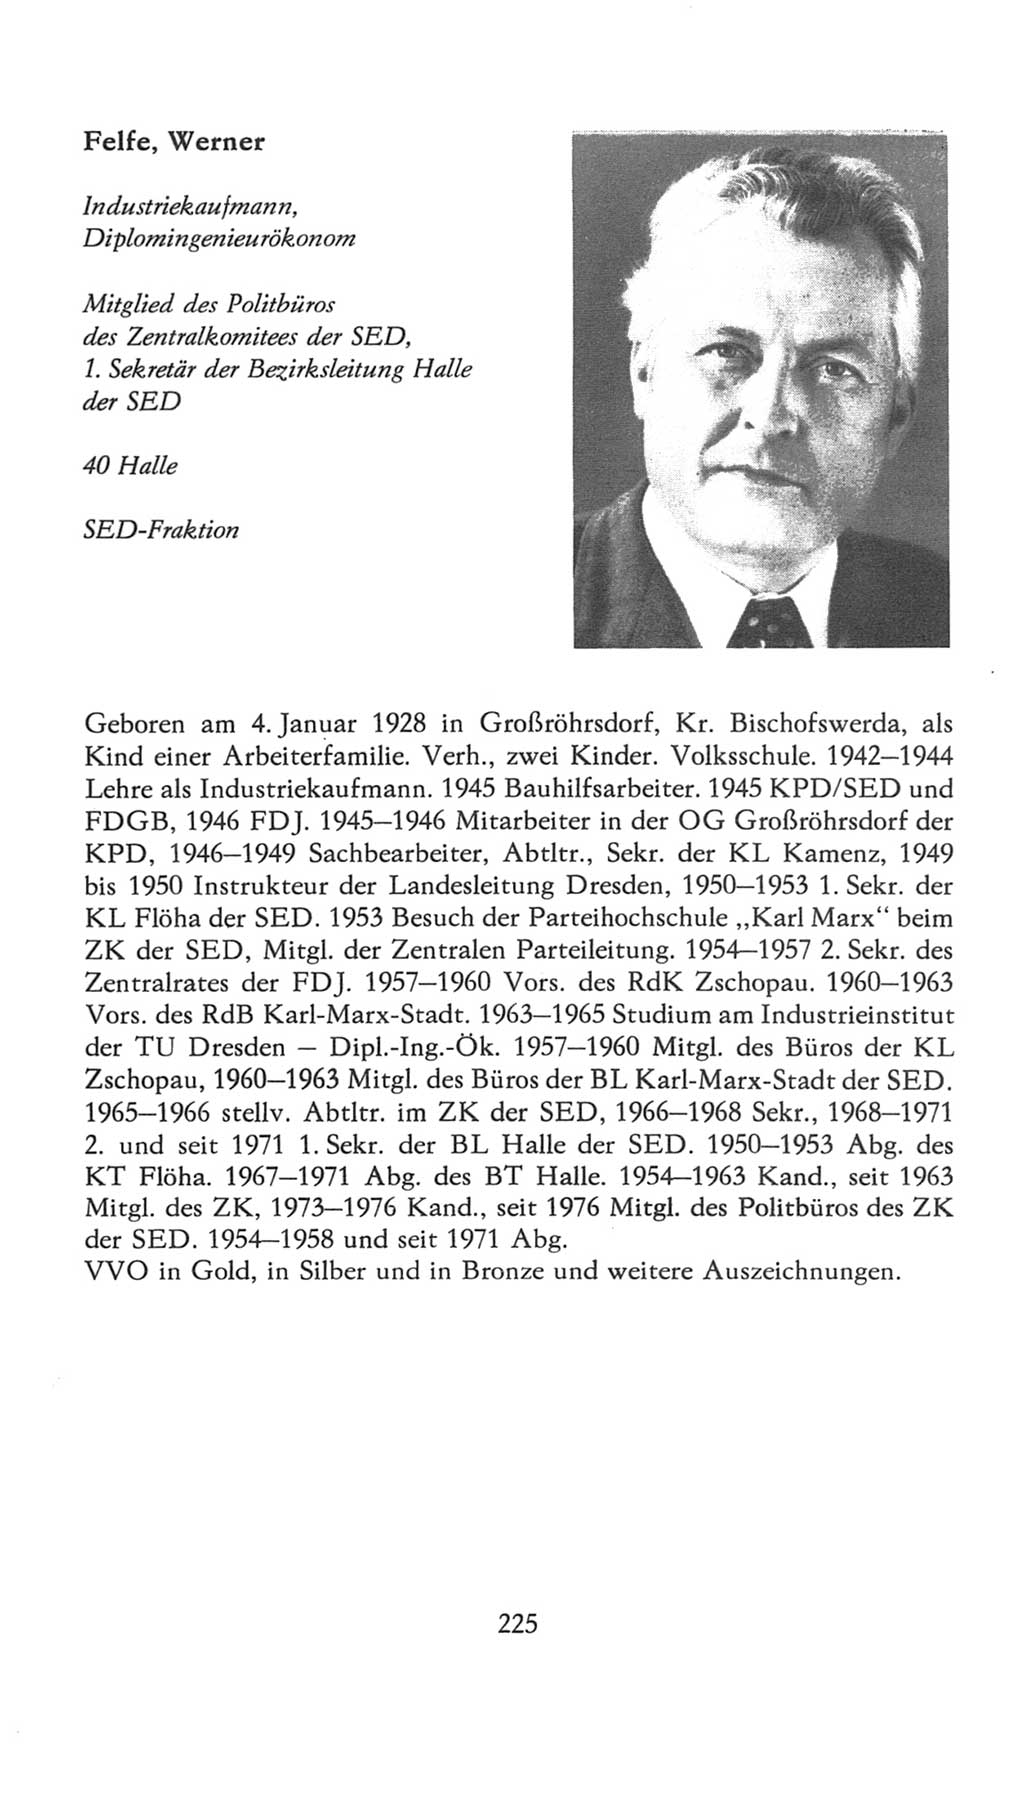 Volkskammer (VK) der Deutschen Demokratischen Republik (DDR), 7. Wahlperiode 1976-1981, Seite 225 (VK. DDR 7. WP. 1976-1981, S. 225)